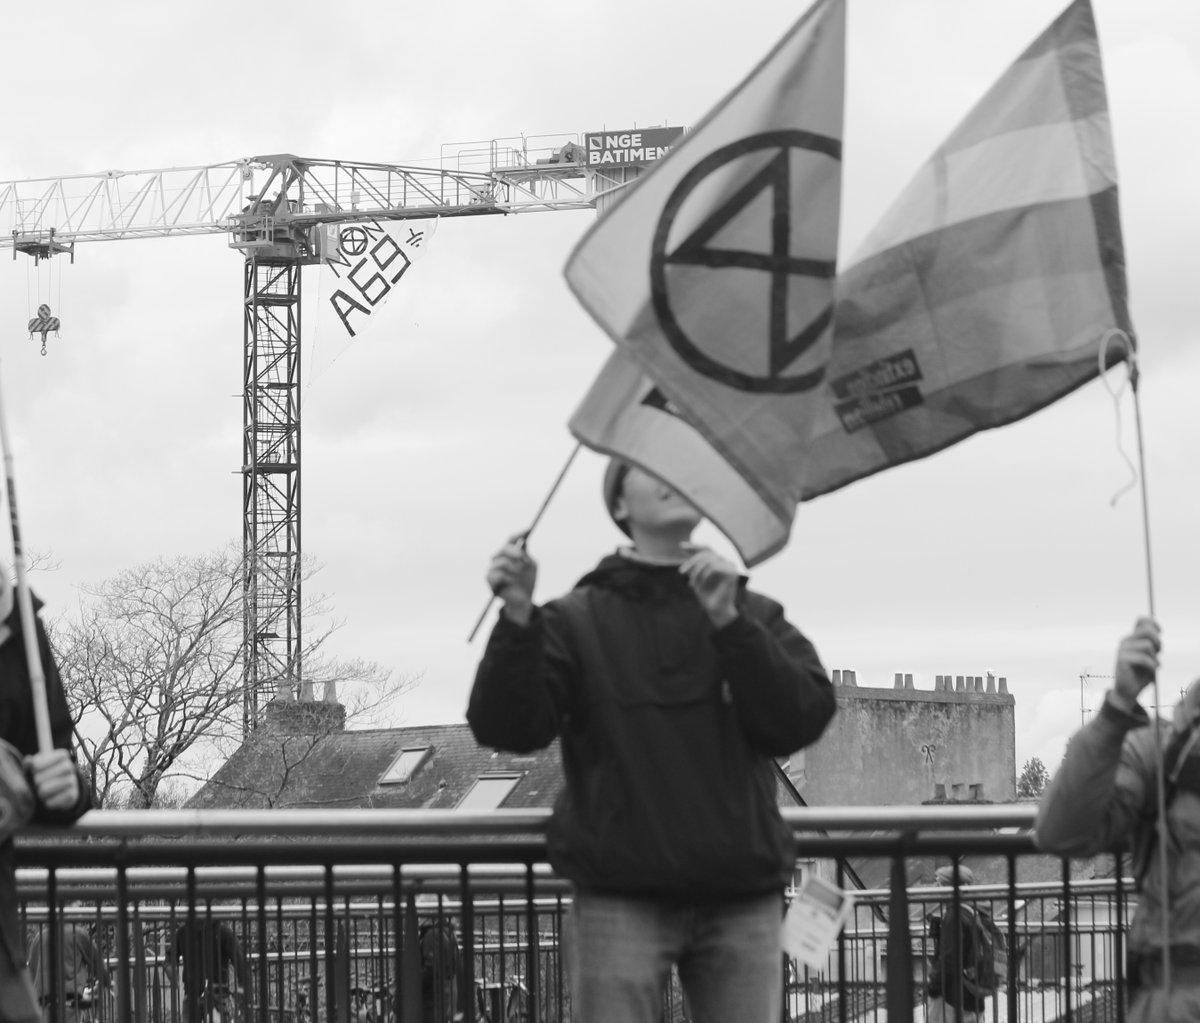 🏗 Ce matin nous avons accroché une banderole 'Non A69' sur la grue d'un chantier de l'entreprise de BTP NGE, cour des 50 Otages, pour dénoncer l’implication du concessionnaire NGE/Atosca dans le projet destructeur et inutile de l’#A69 #STOPA69 #NOMACADAM #MAFIA69